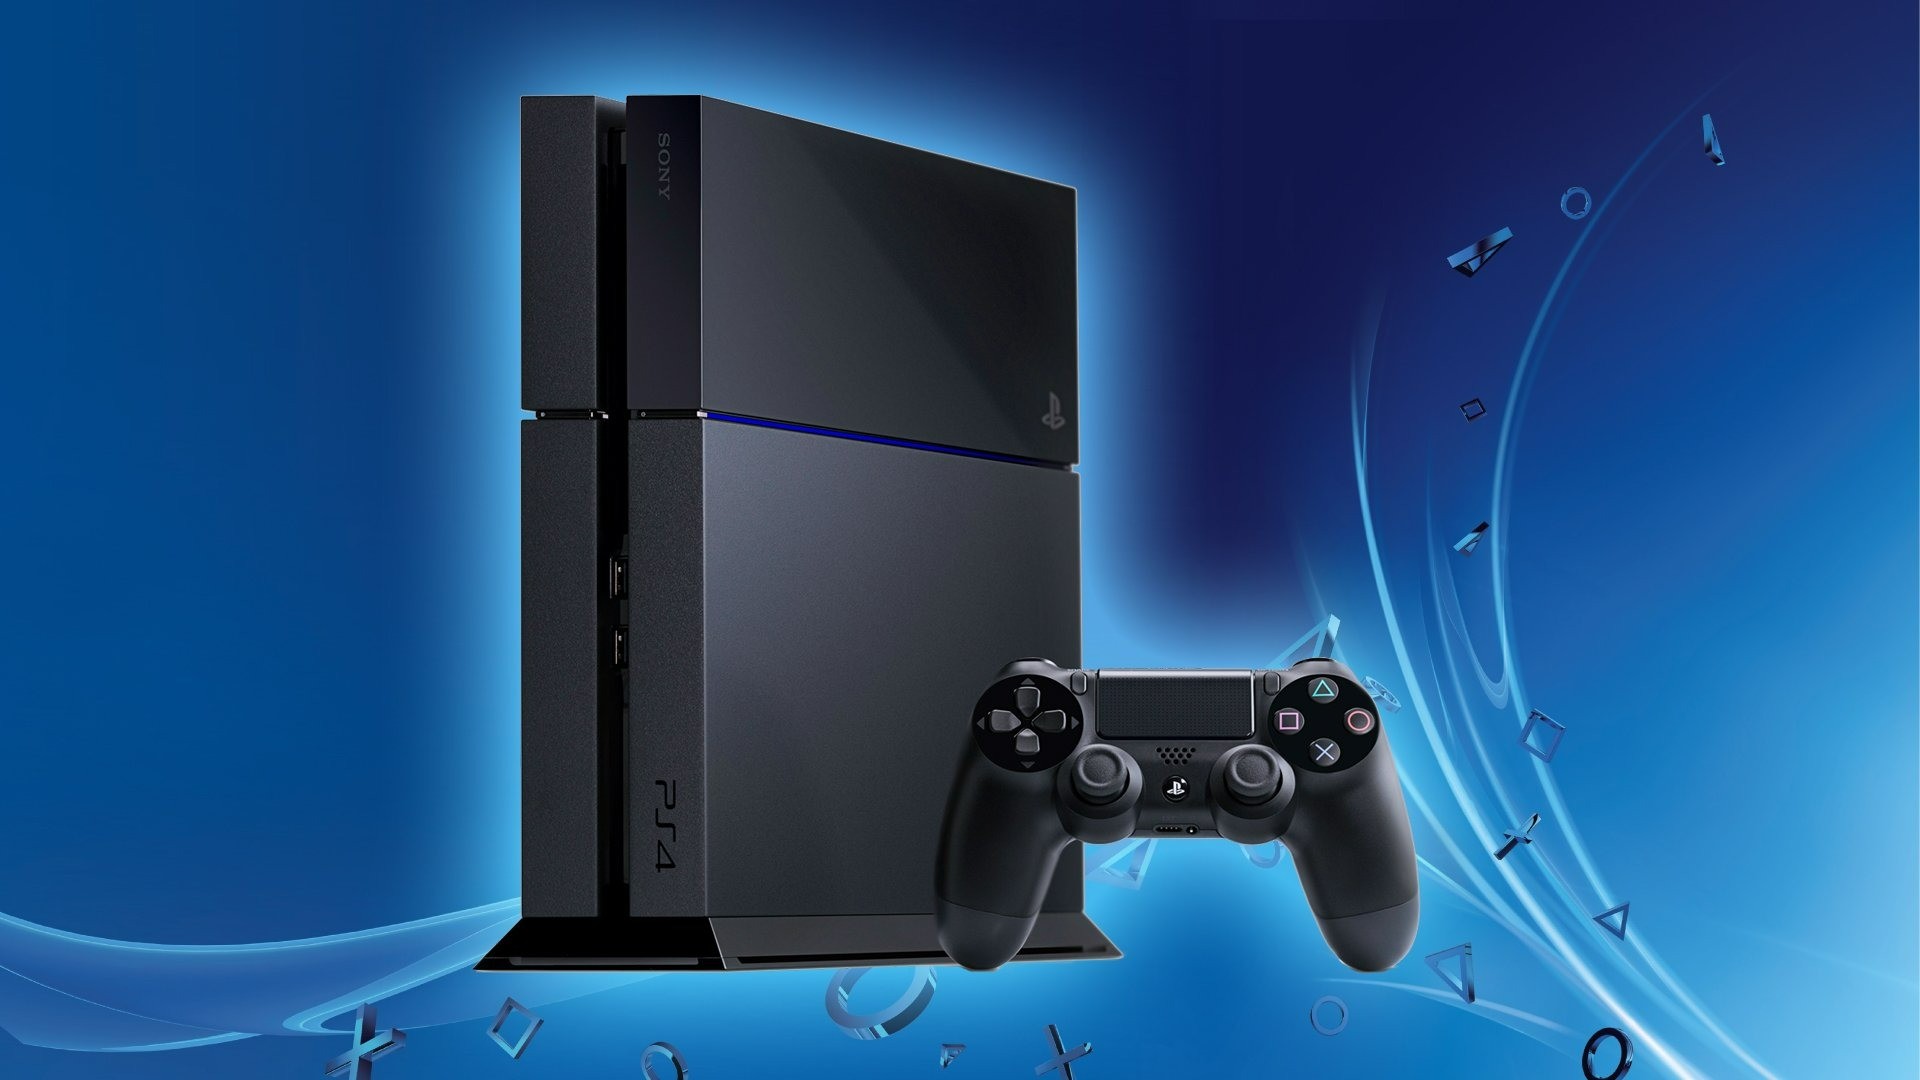 Console PlayStation 4 - Slim 1TB - Hits Bundle v4 (Versão Nacional)